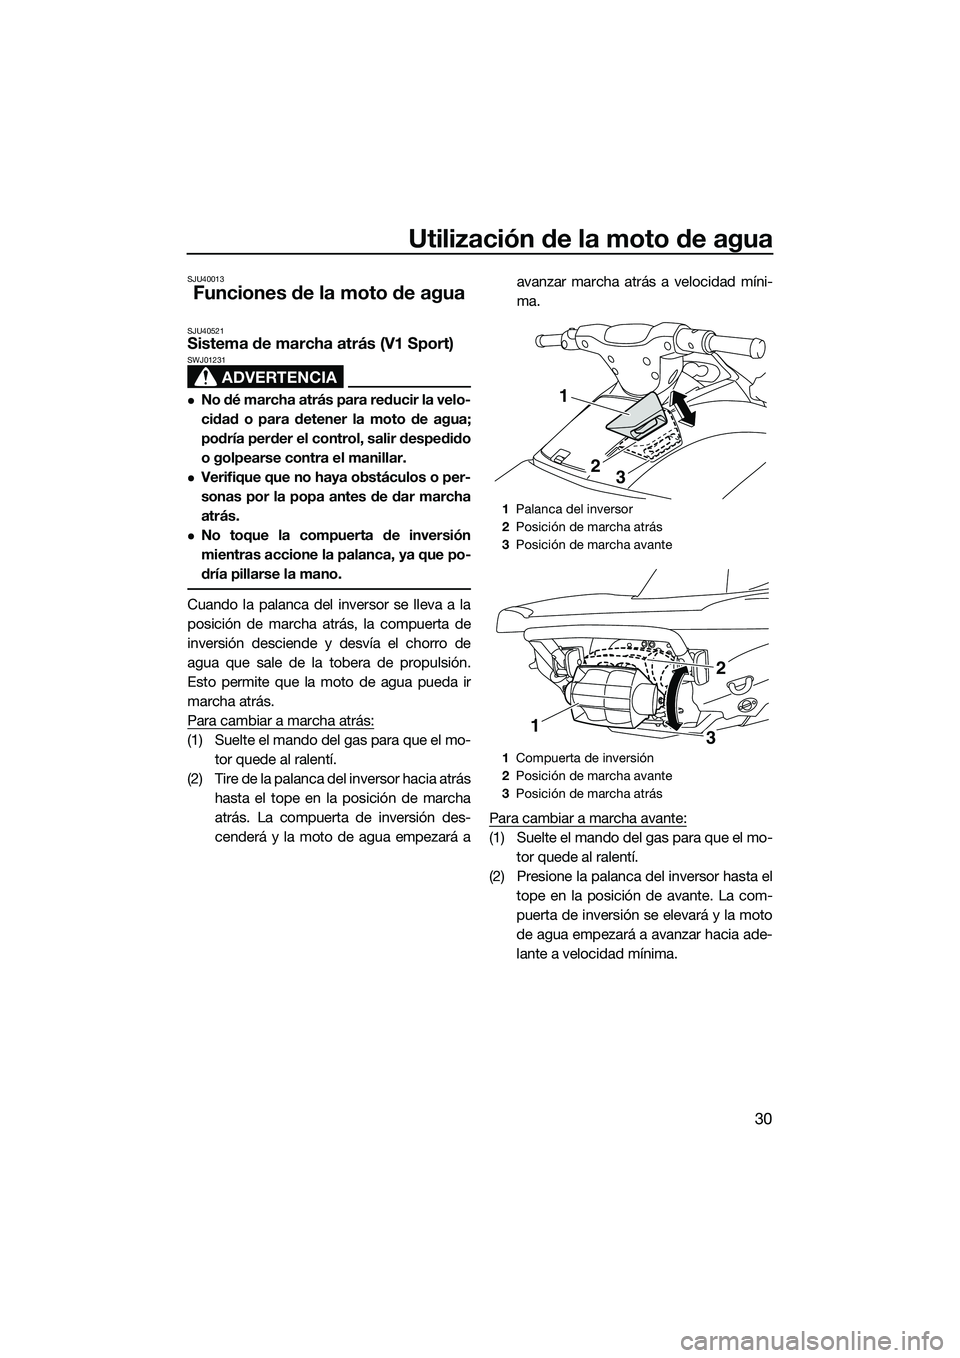 YAMAHA V1 2015  Manuale de Empleo (in Spanish) Utilización de la moto de agua
30
SJU40013
Funciones de la moto de agua
SJU40521Sistema de marcha atrás (V1 Sport)
ADVERTENCIA
SWJ01231
No dé marcha atrás para reducir la velo-
cidad o para det